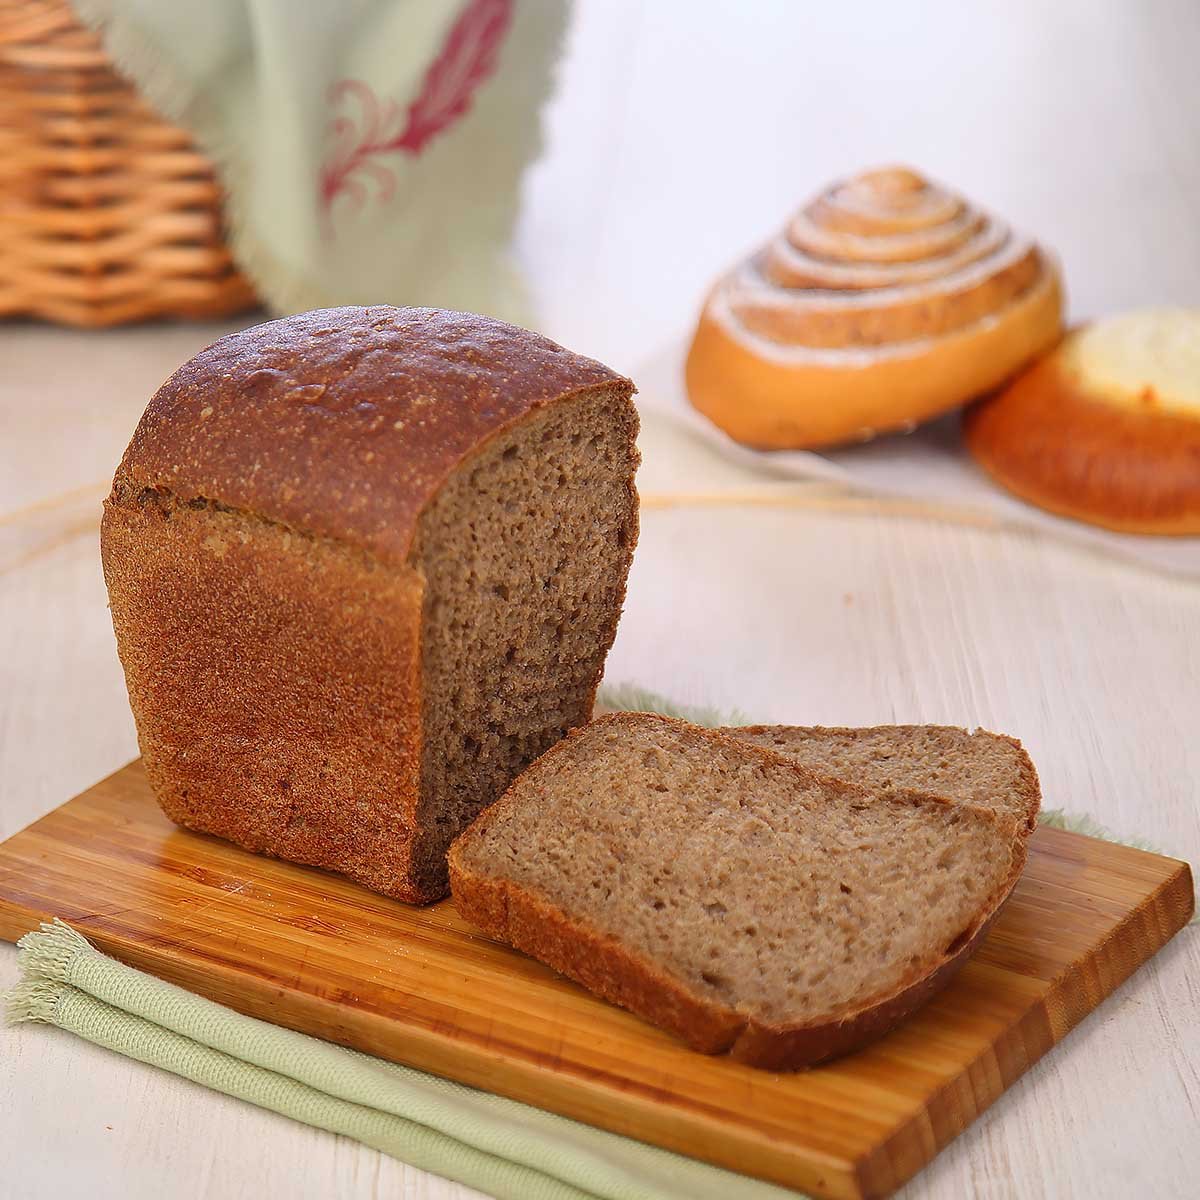 Производство ржаного хлеба. Ржано-пшеничный хлеб. Хлеб деревенский ржано-пшеничный. Хлеб ржано-пшеничный украинский. Ржано-пшеничный хлеб ржано-пшеничный хлеб.